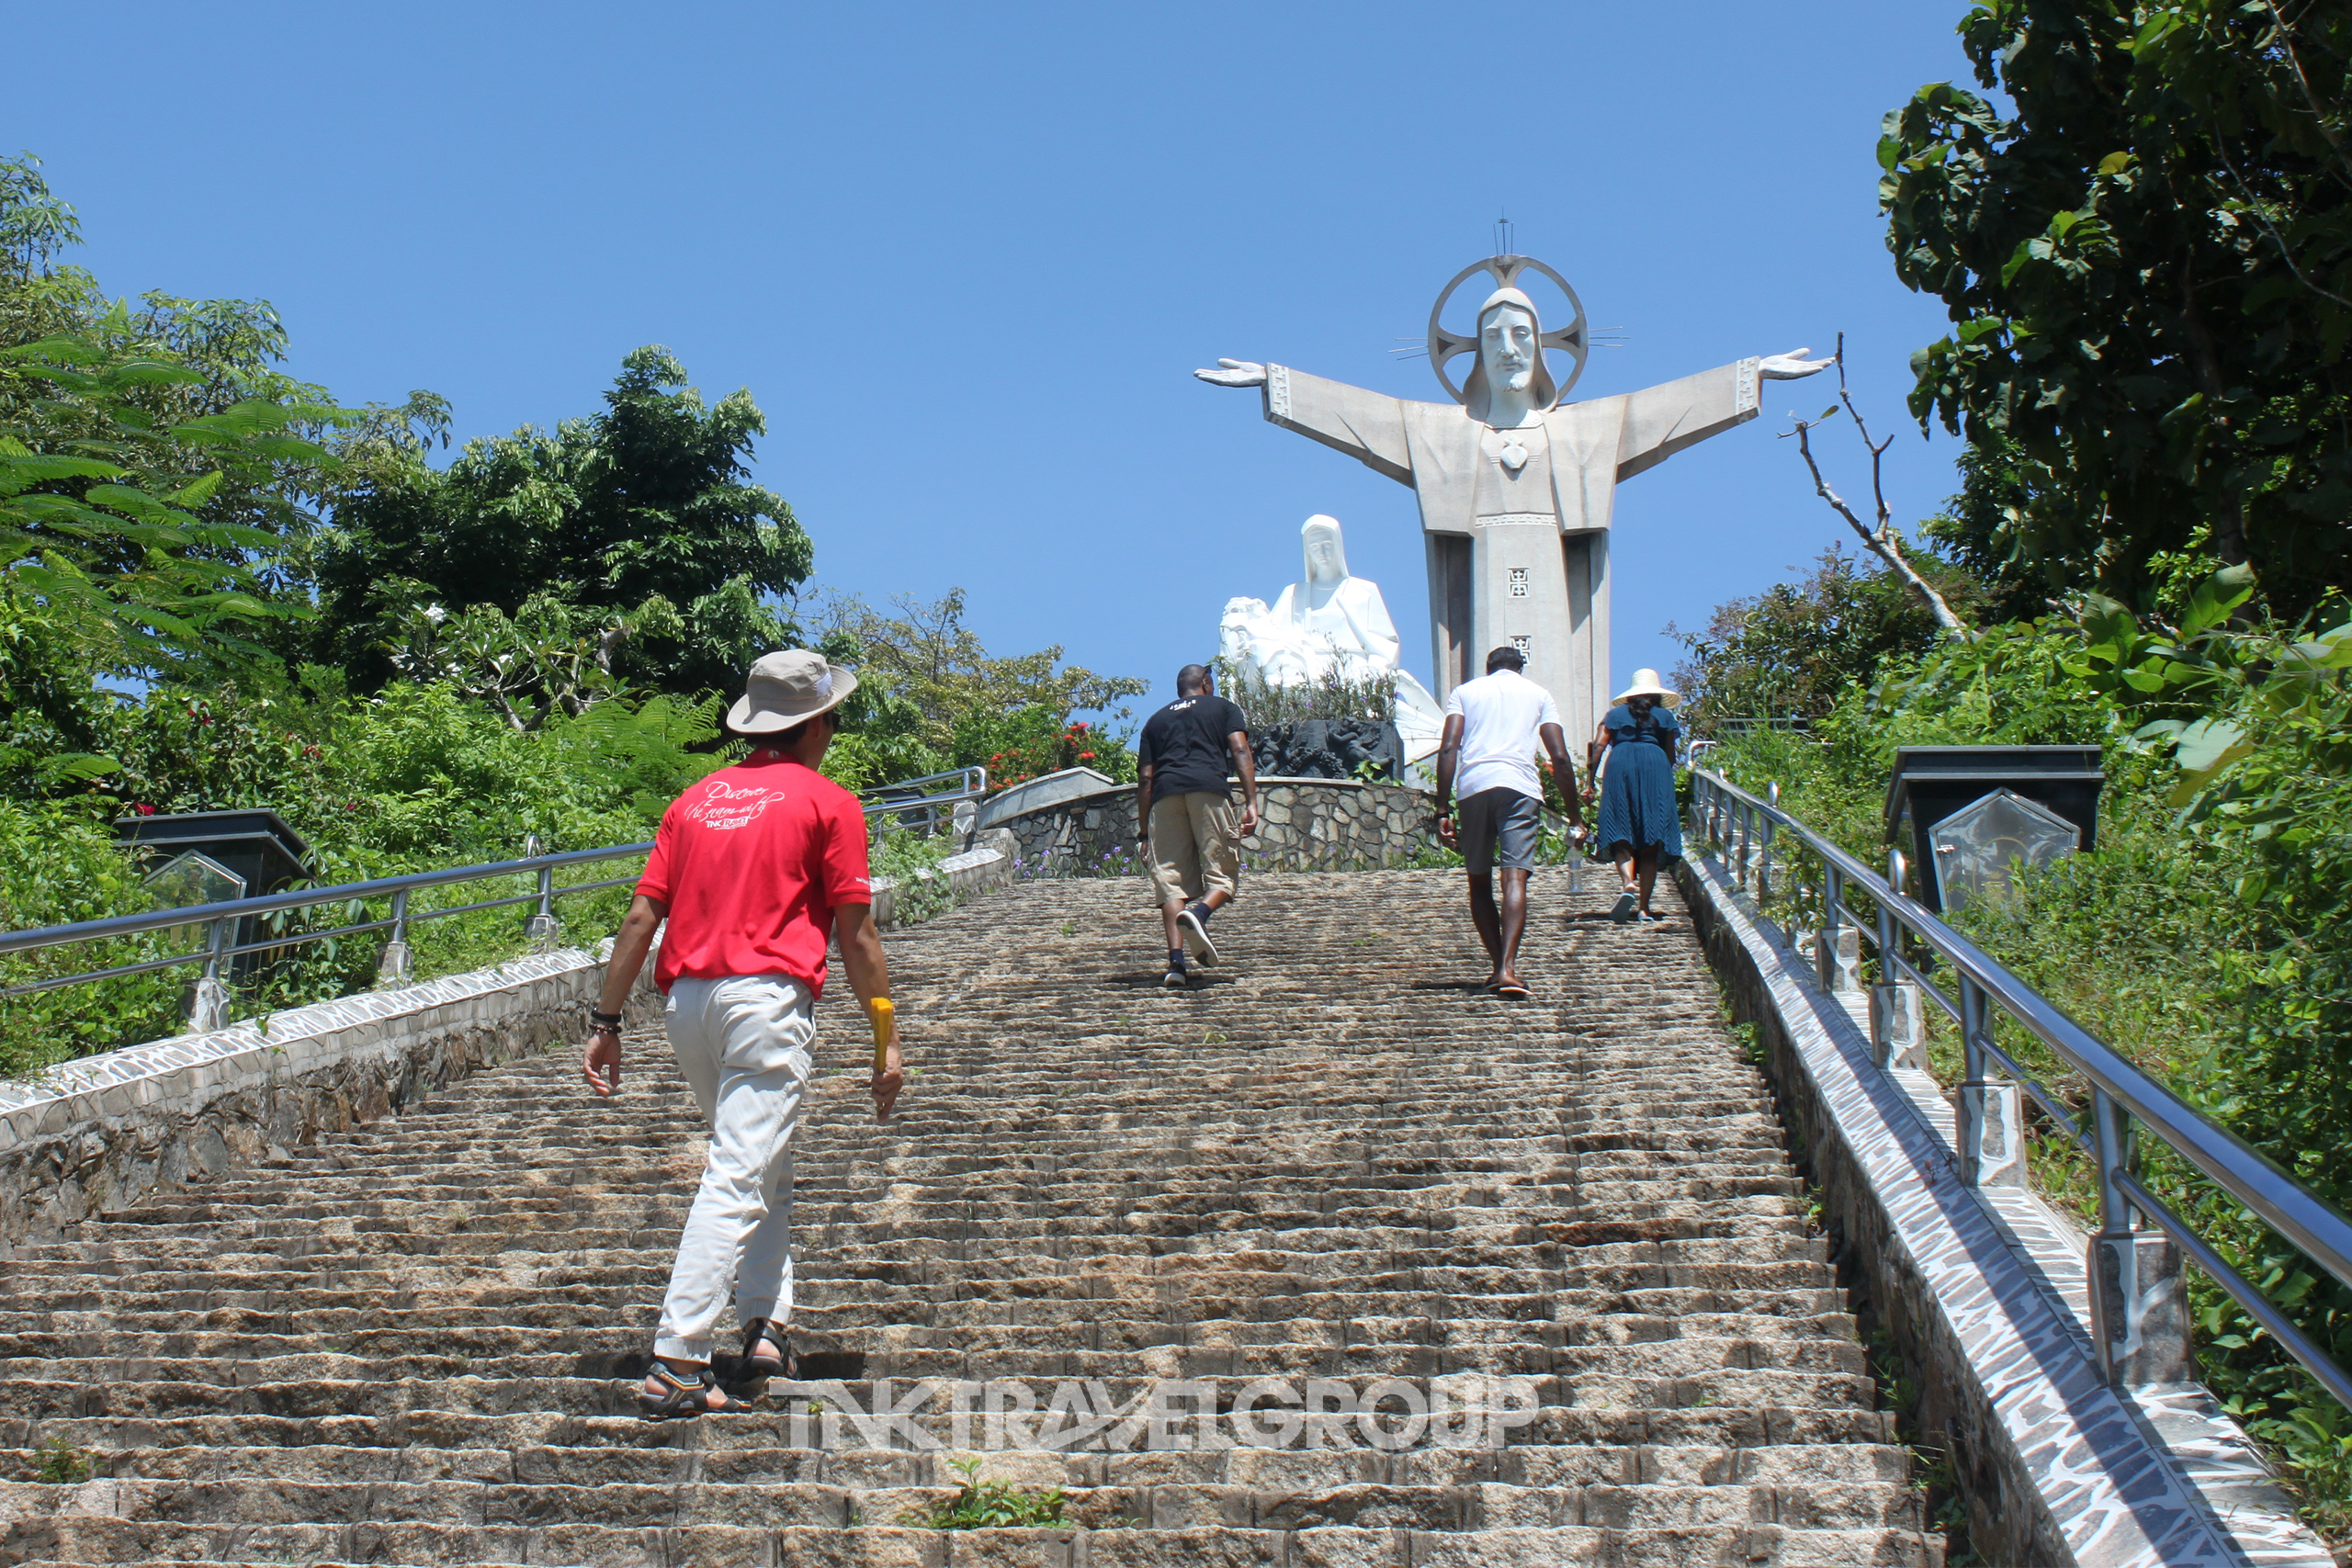 The Statue Jesus Christ in Vung Tau